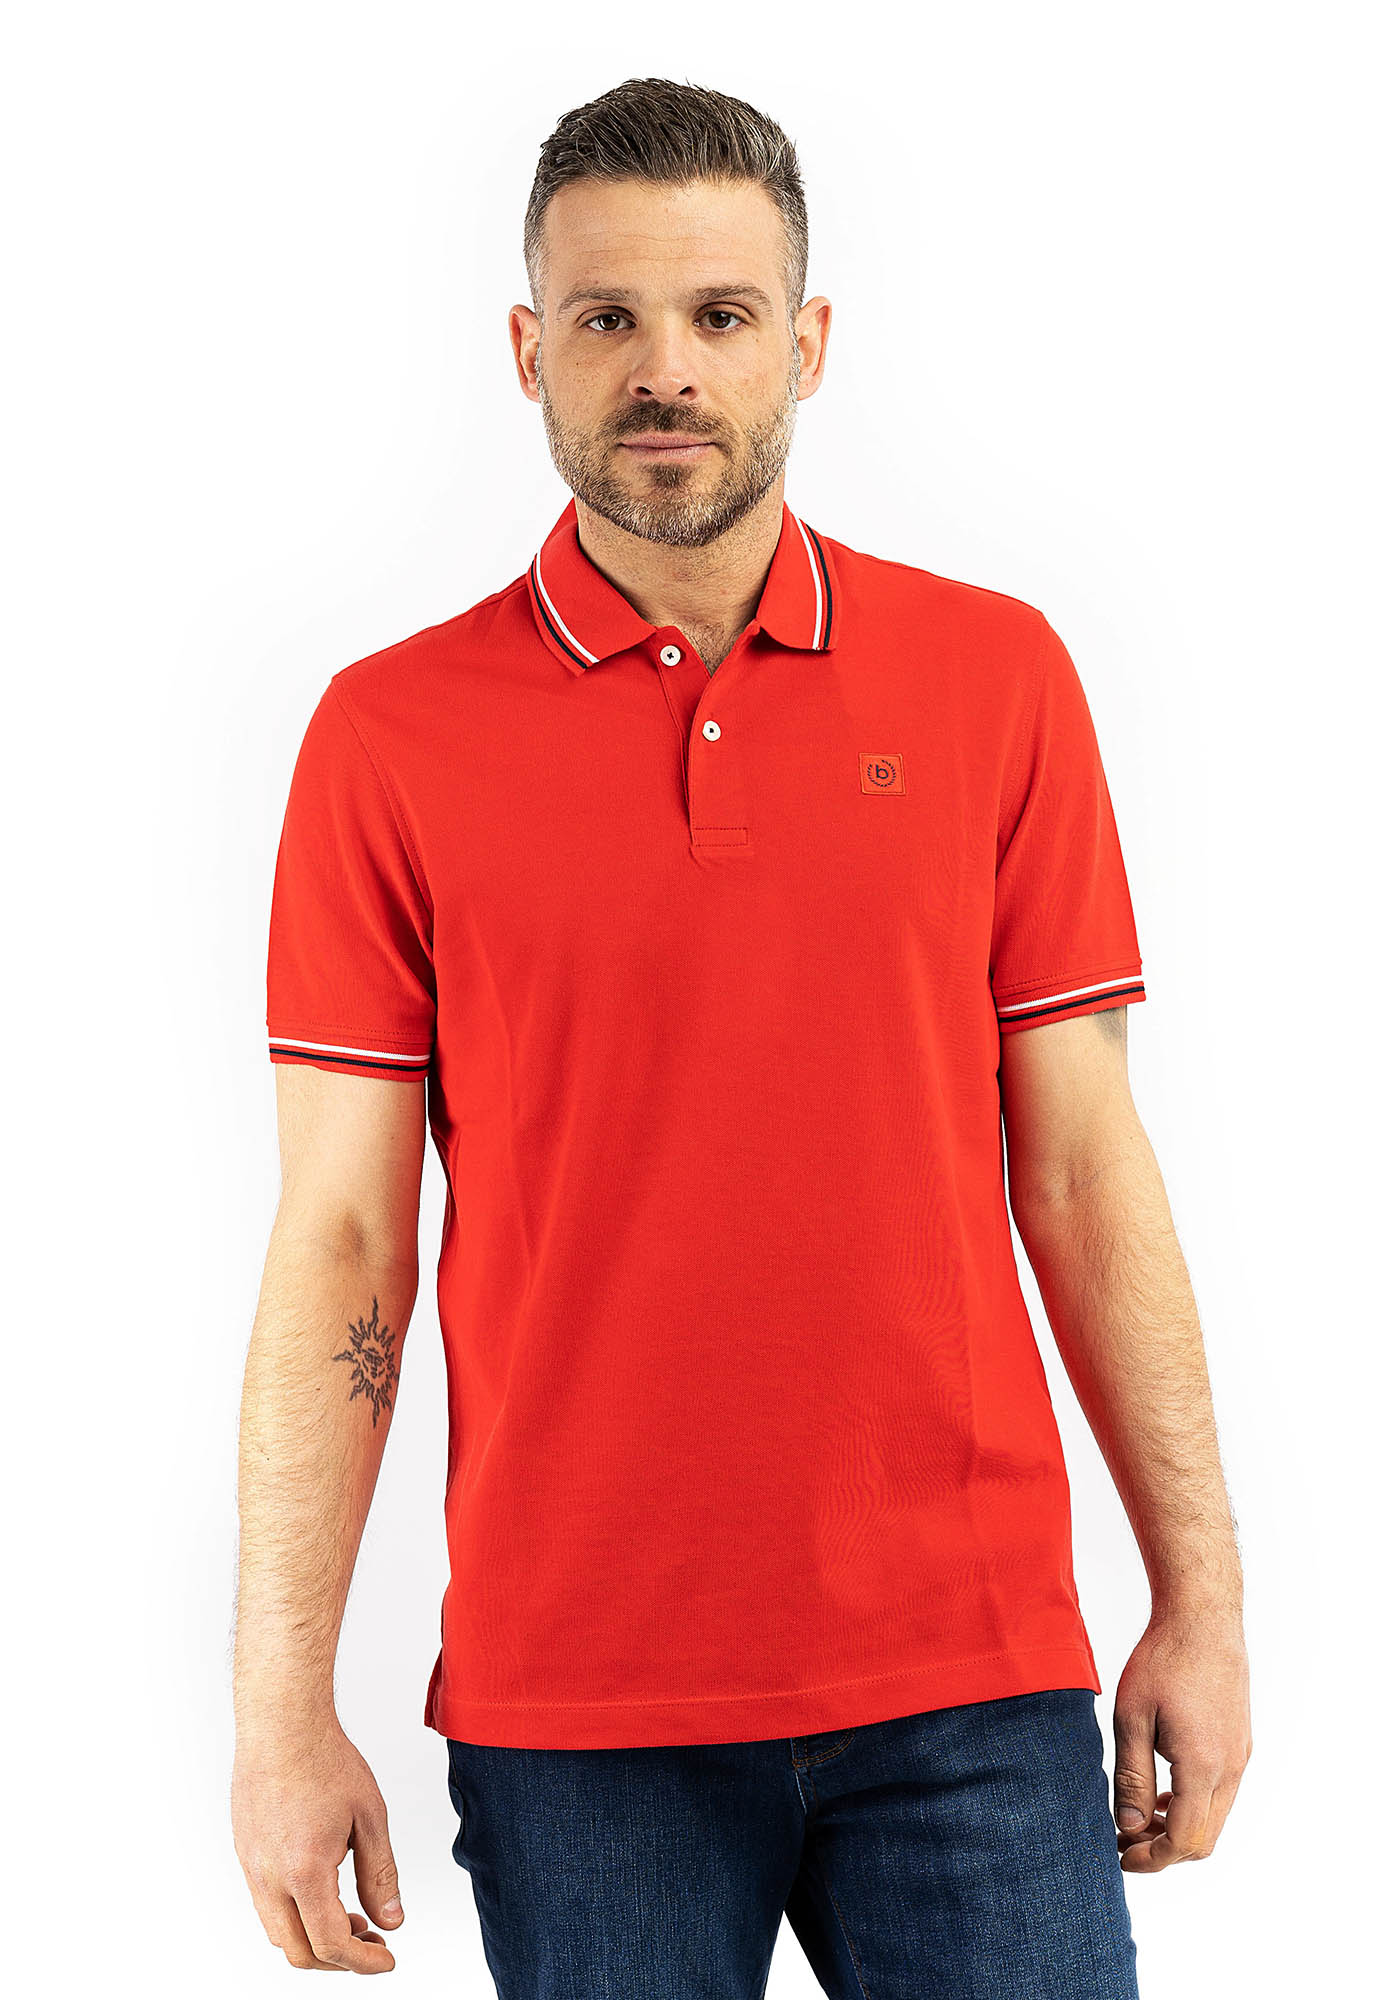 Βugatti Sportswear Polo T-Shirt - 8150 55001 950 Red